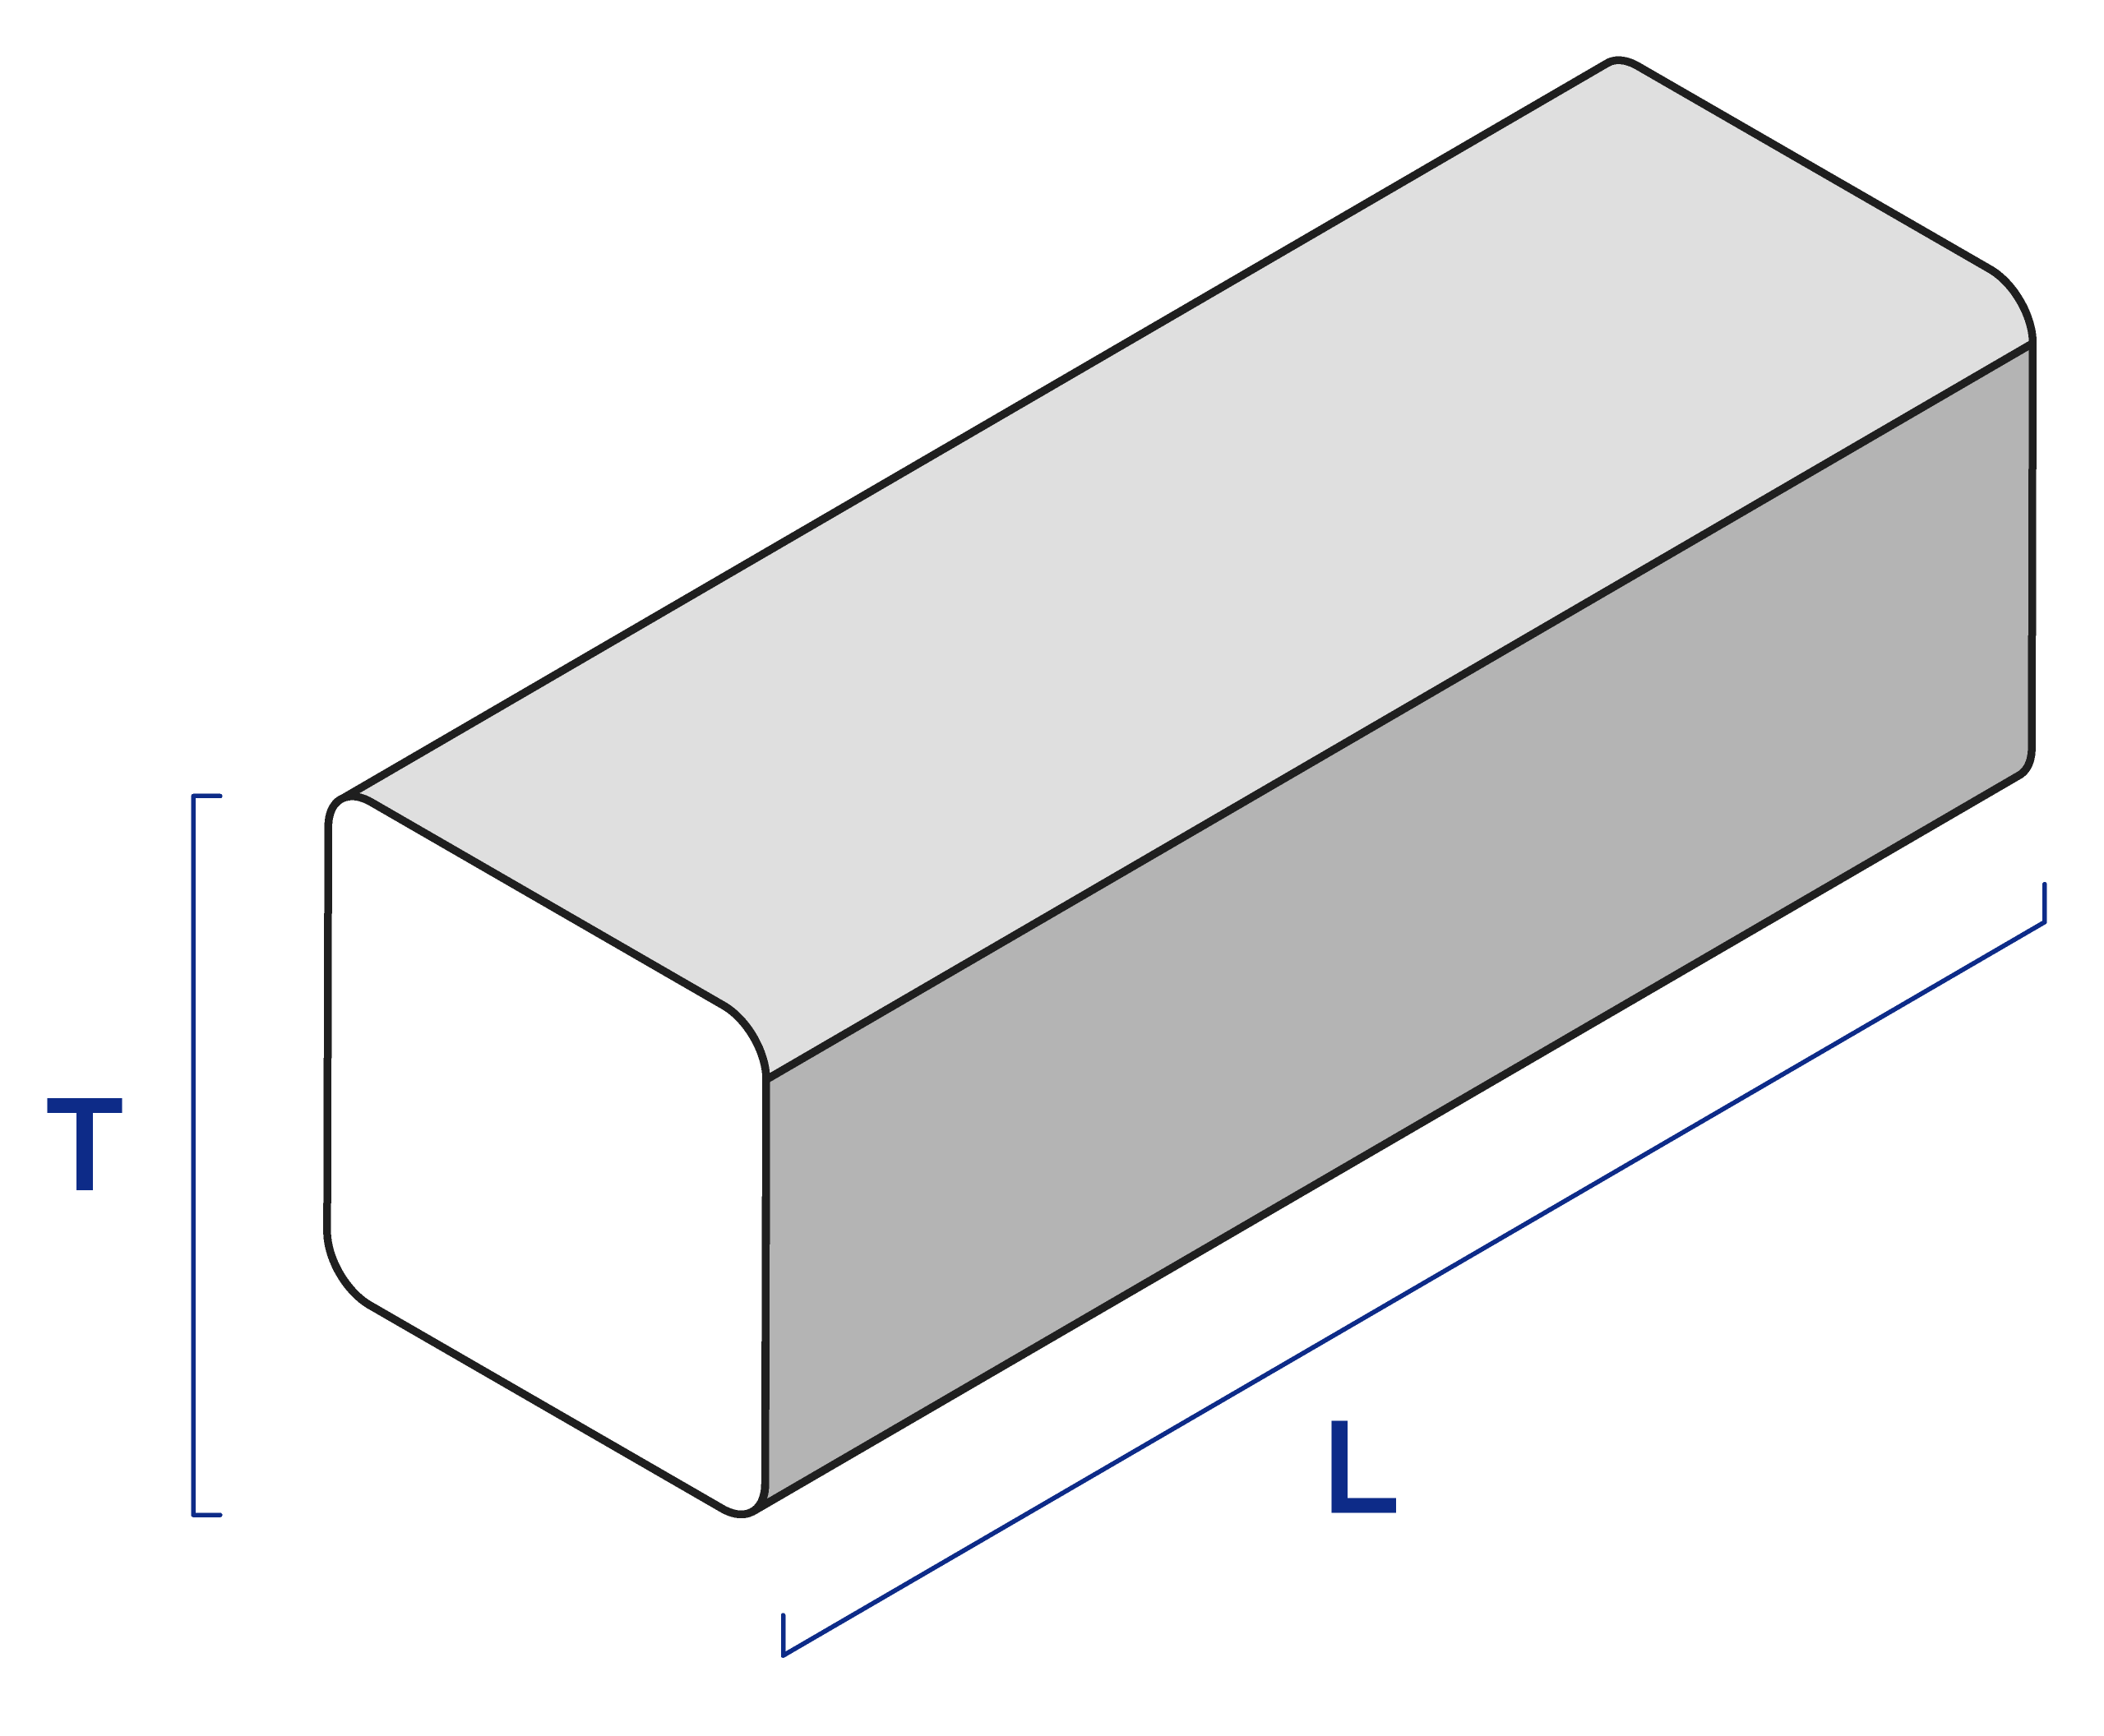 aluminum square bar diagram